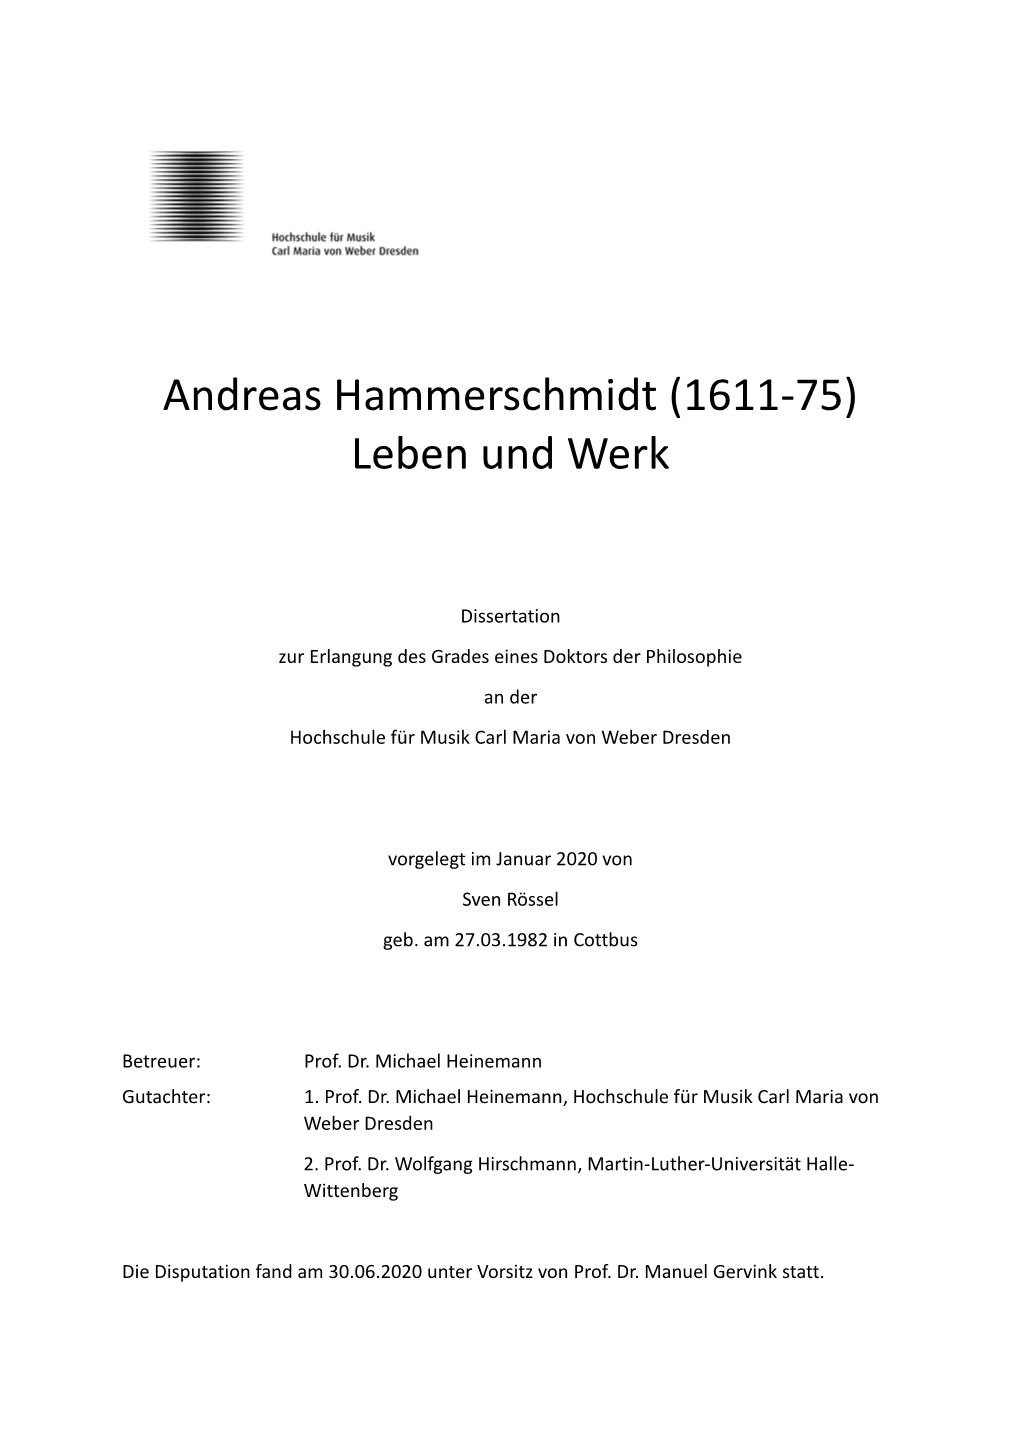 Andreas Hammerschmidt 1611-75